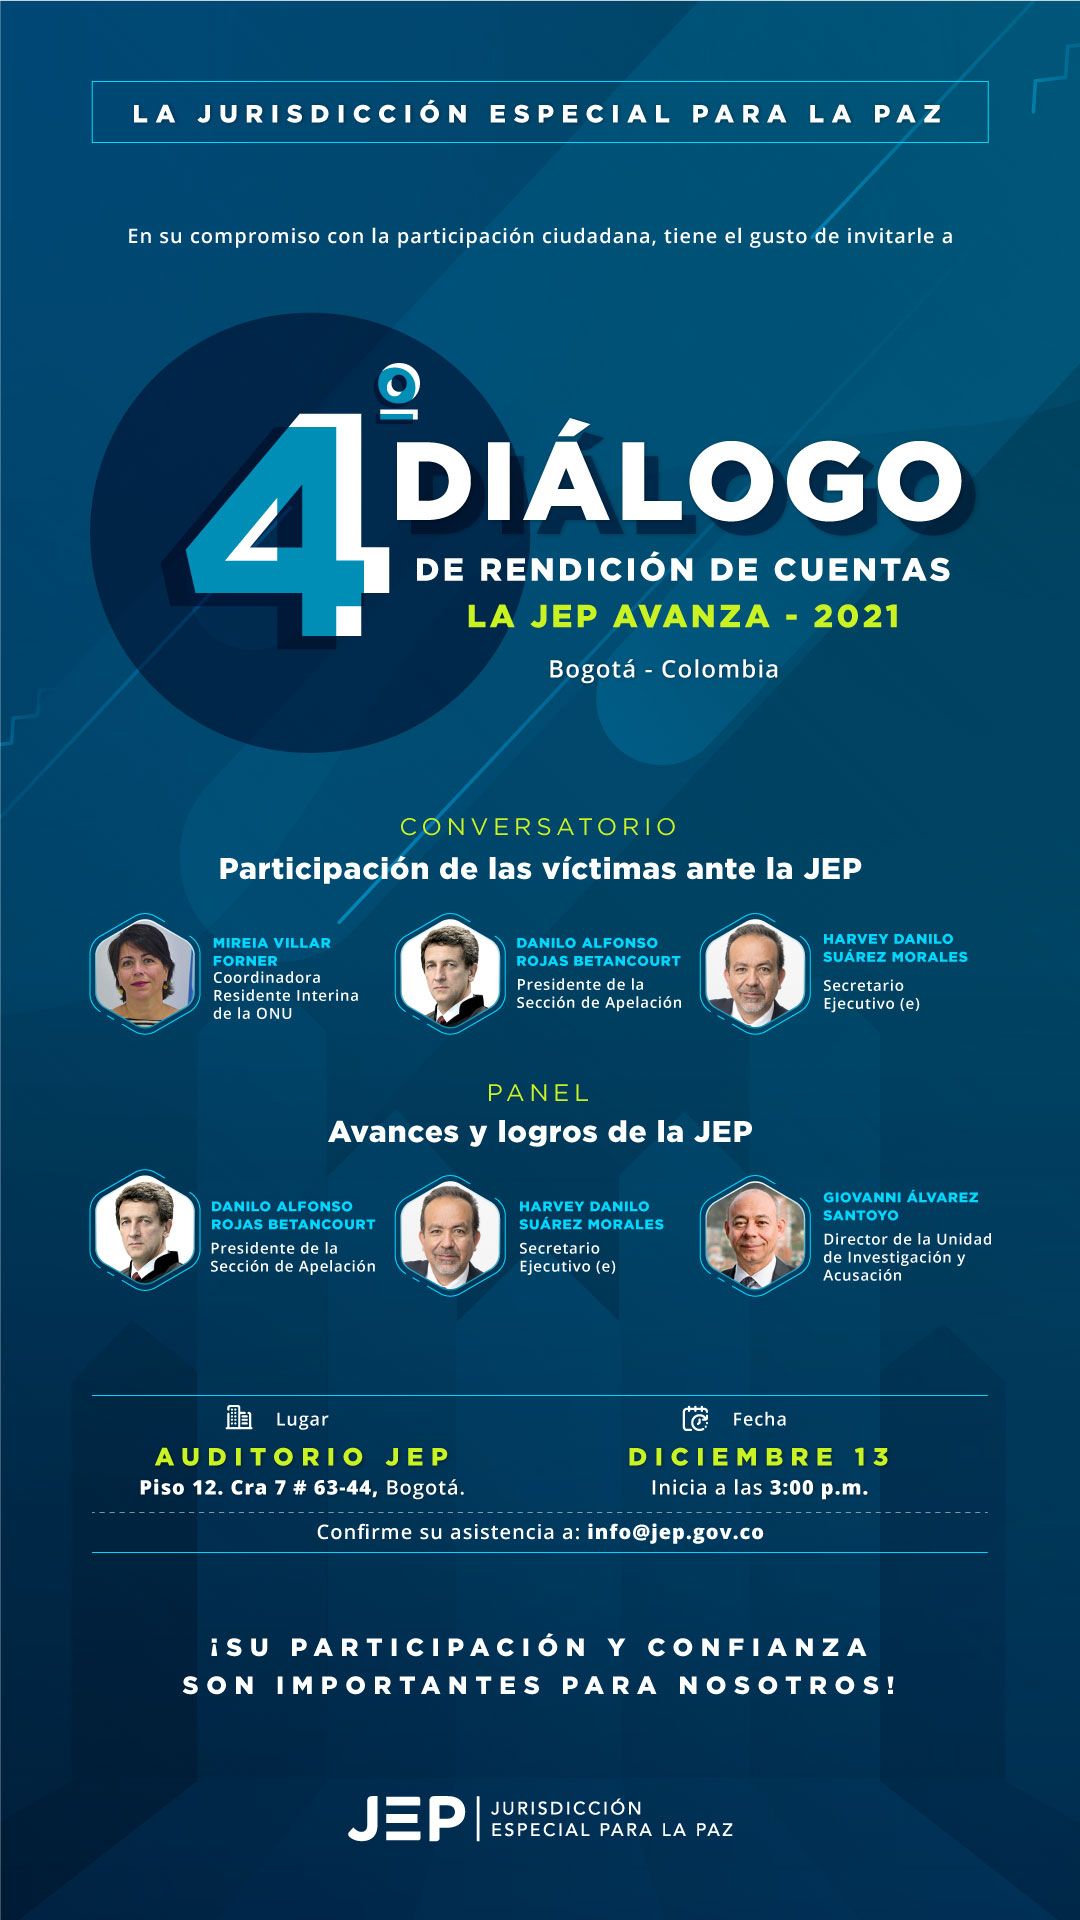 Invitación al Cuarto Diálogo de Rendición de cuentas: LA JEP AVANZA